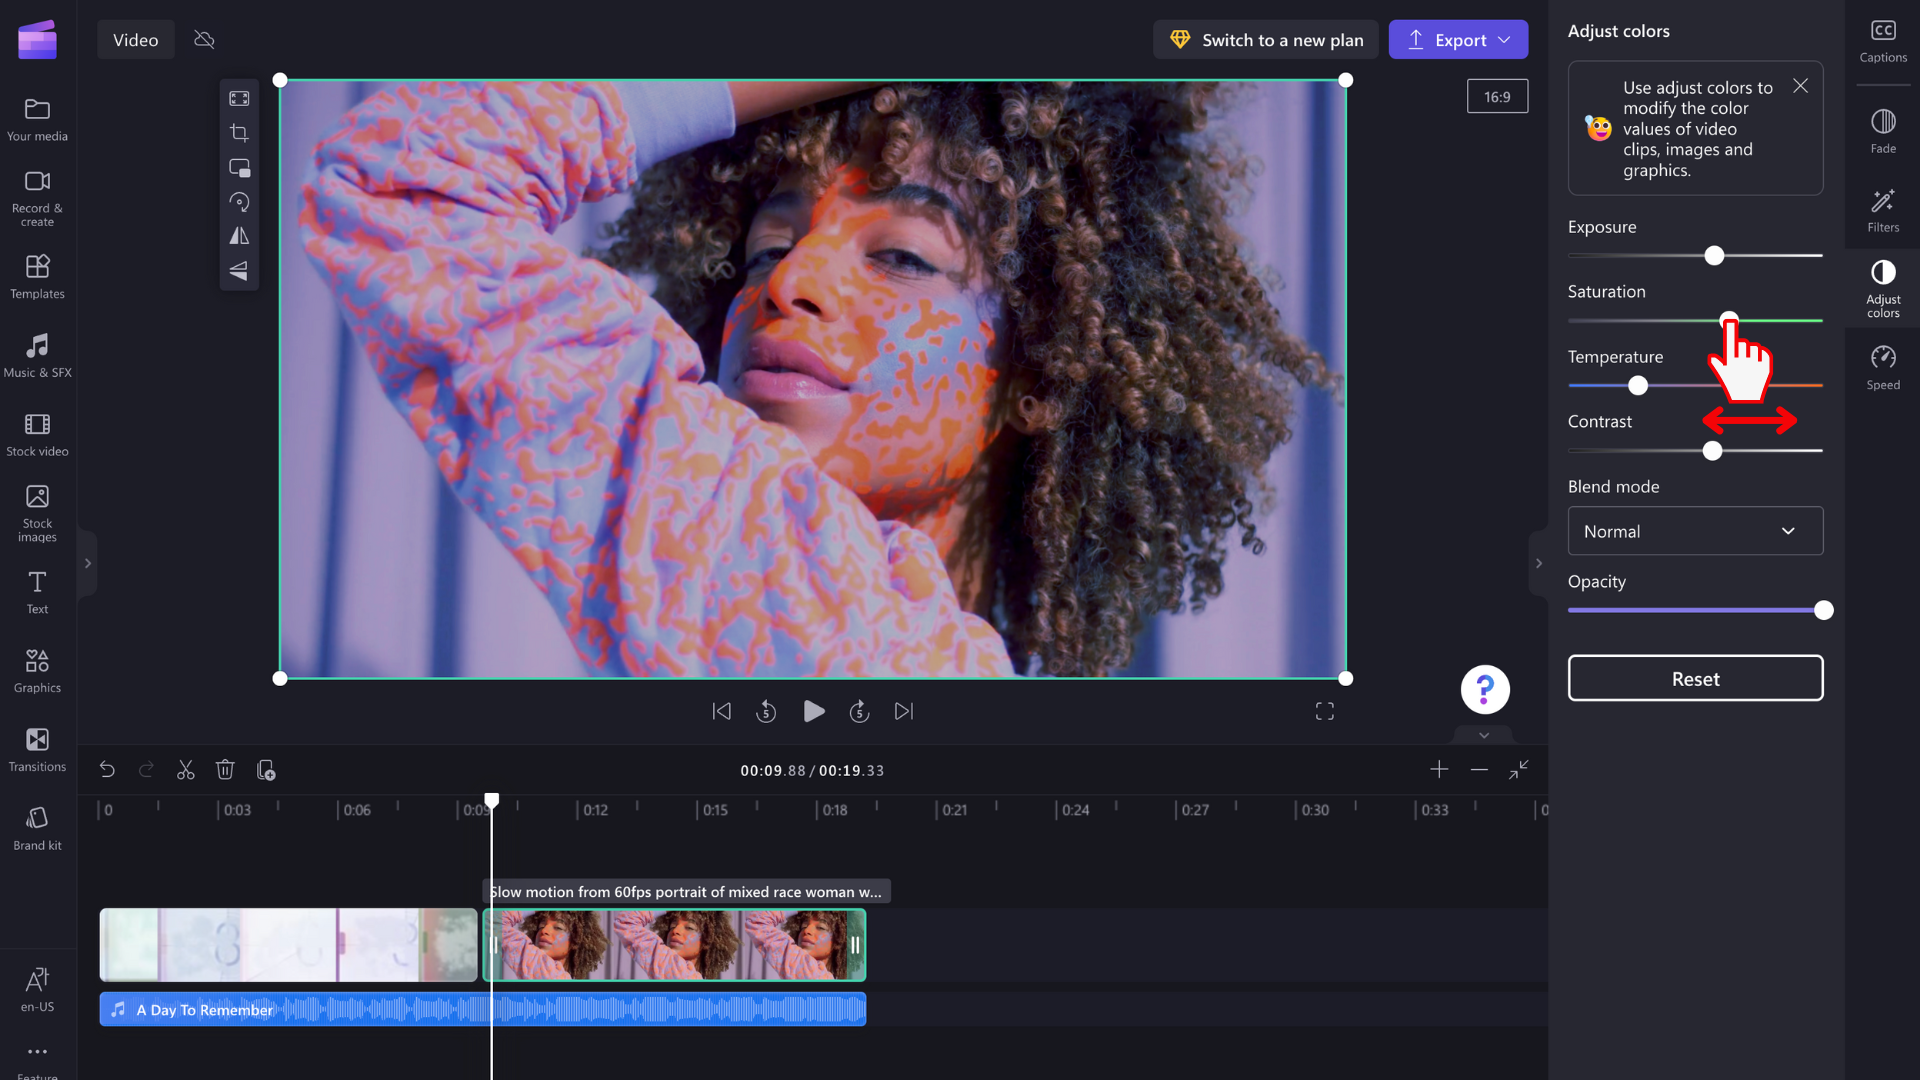 Зображення користувача, який редагує колір відео за допомогою повзунка.